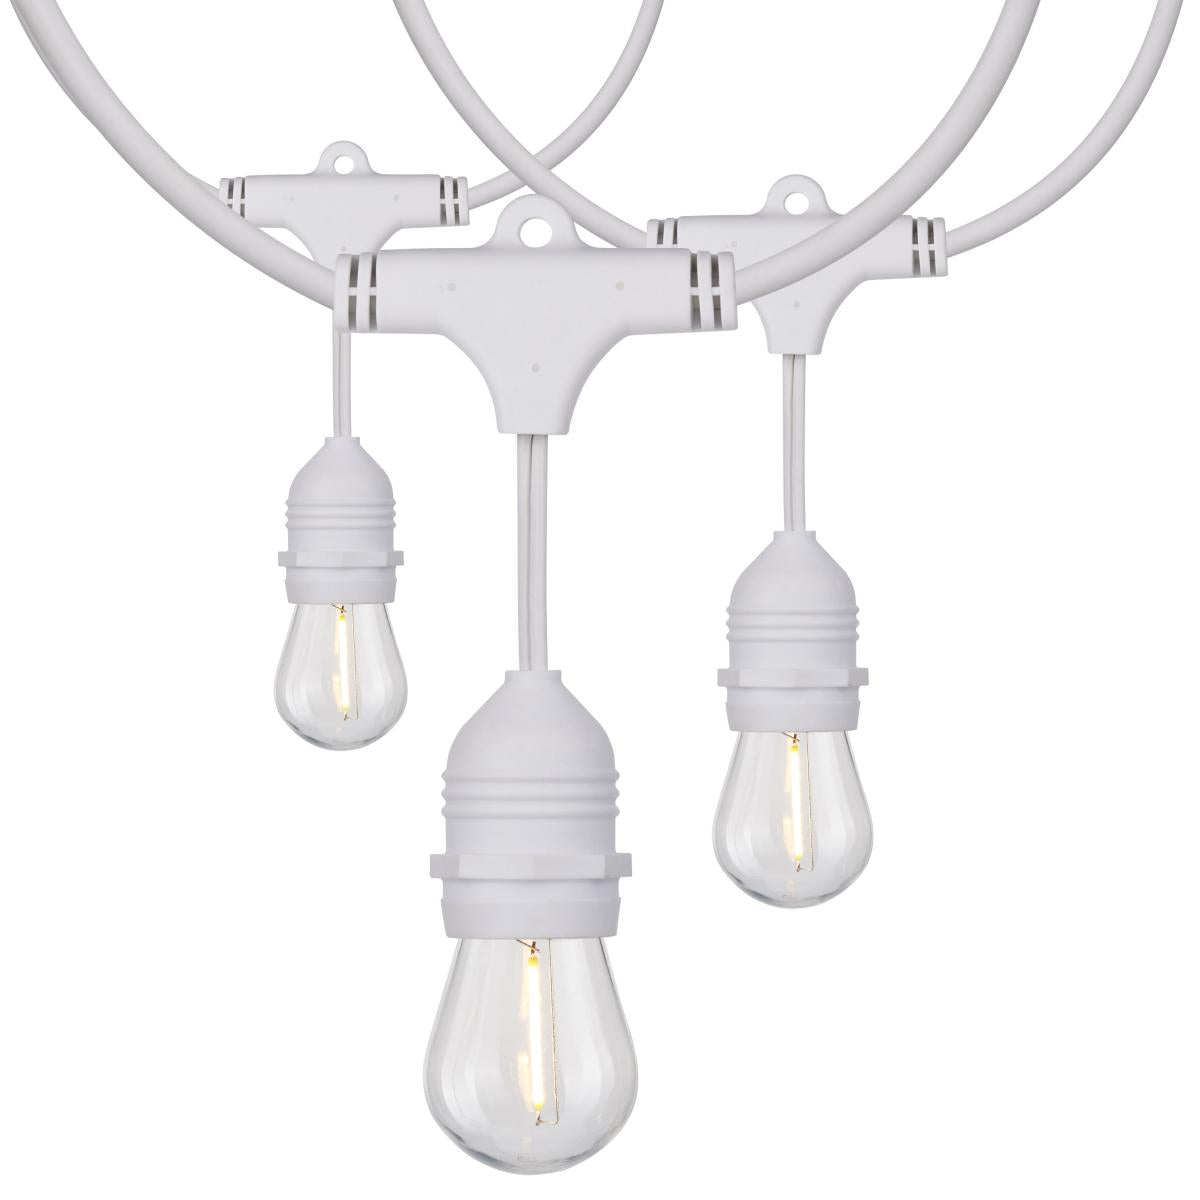 24' LED String Light - White